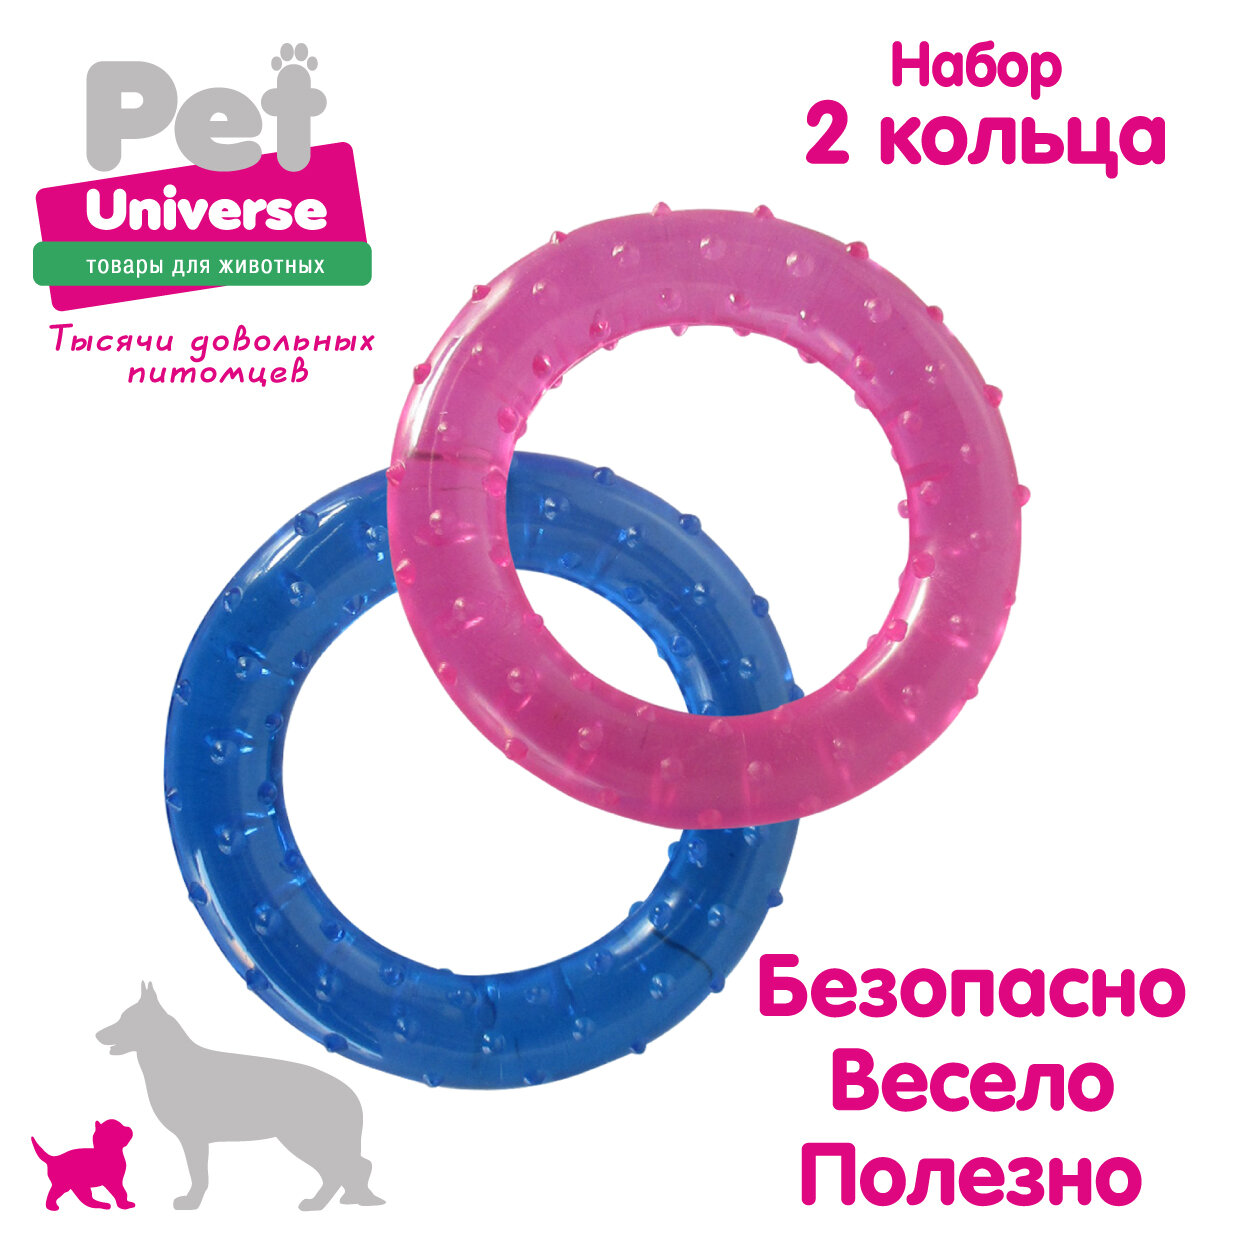 Игрушка для собак Pet Universe набор из 2-х колечек с пупырышками диаметр 7,8 см, прозрачный PVC, PU9022